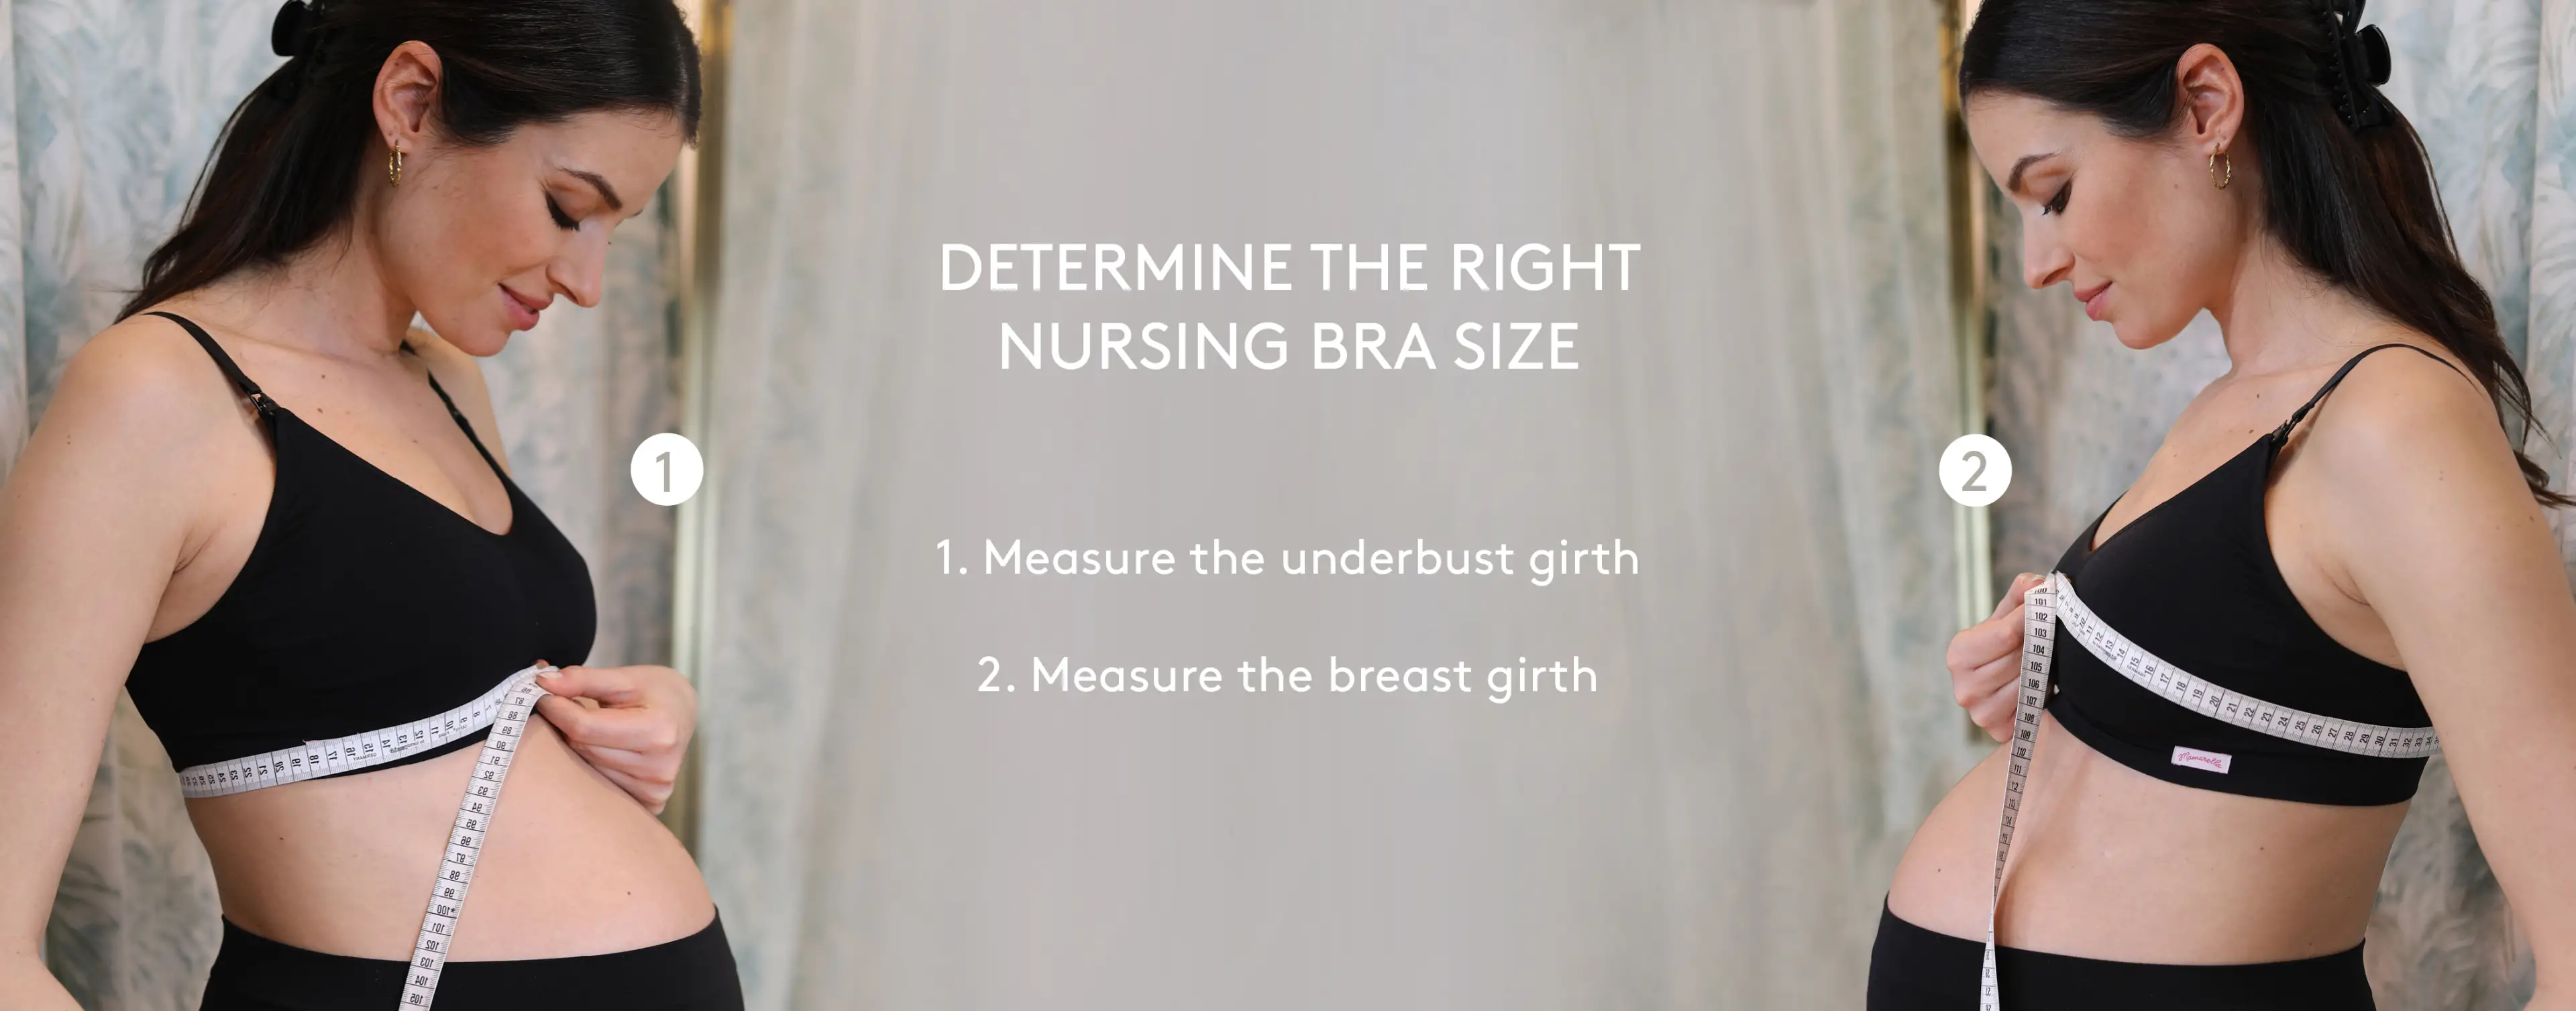 How to Buy a Nursing Bra Guide